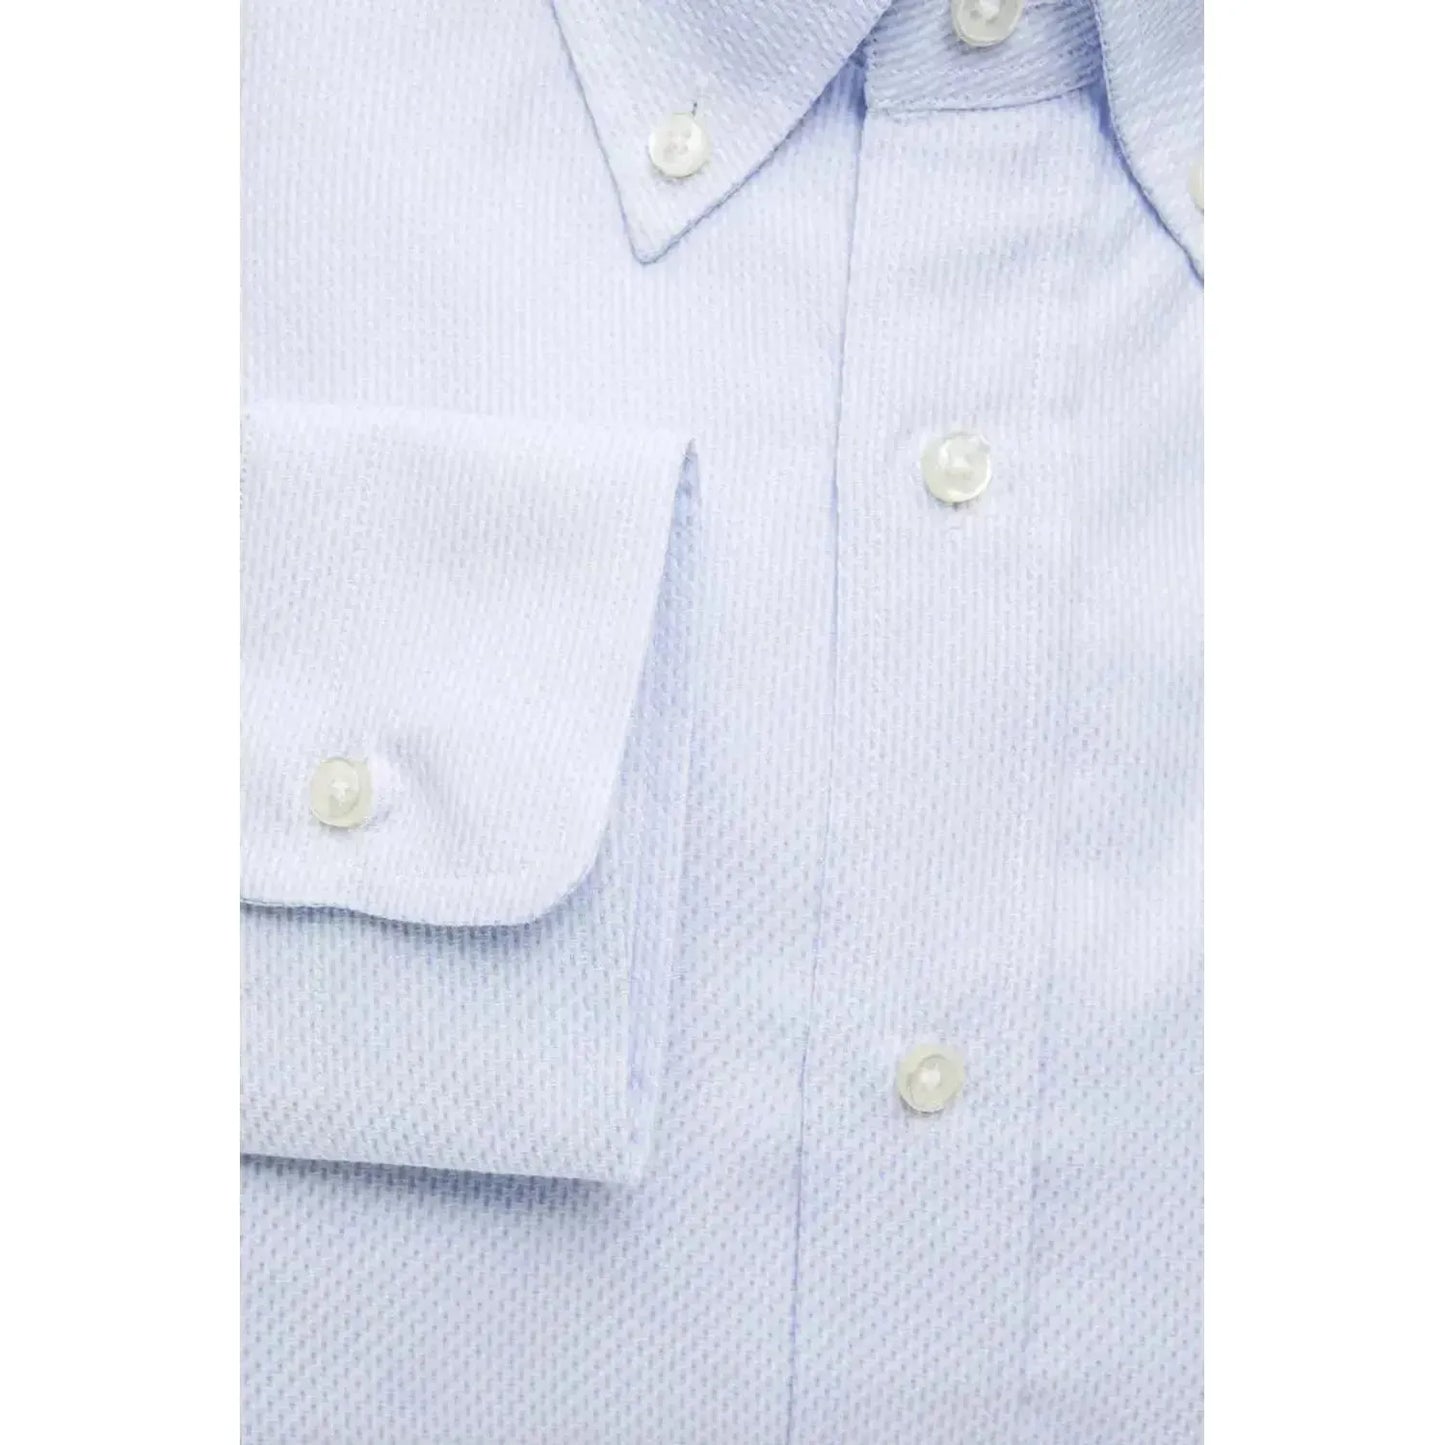 Robert Friedman Elegant Light Blue Cotton Button-Down Shirt light-blue-cotton-shirt-16